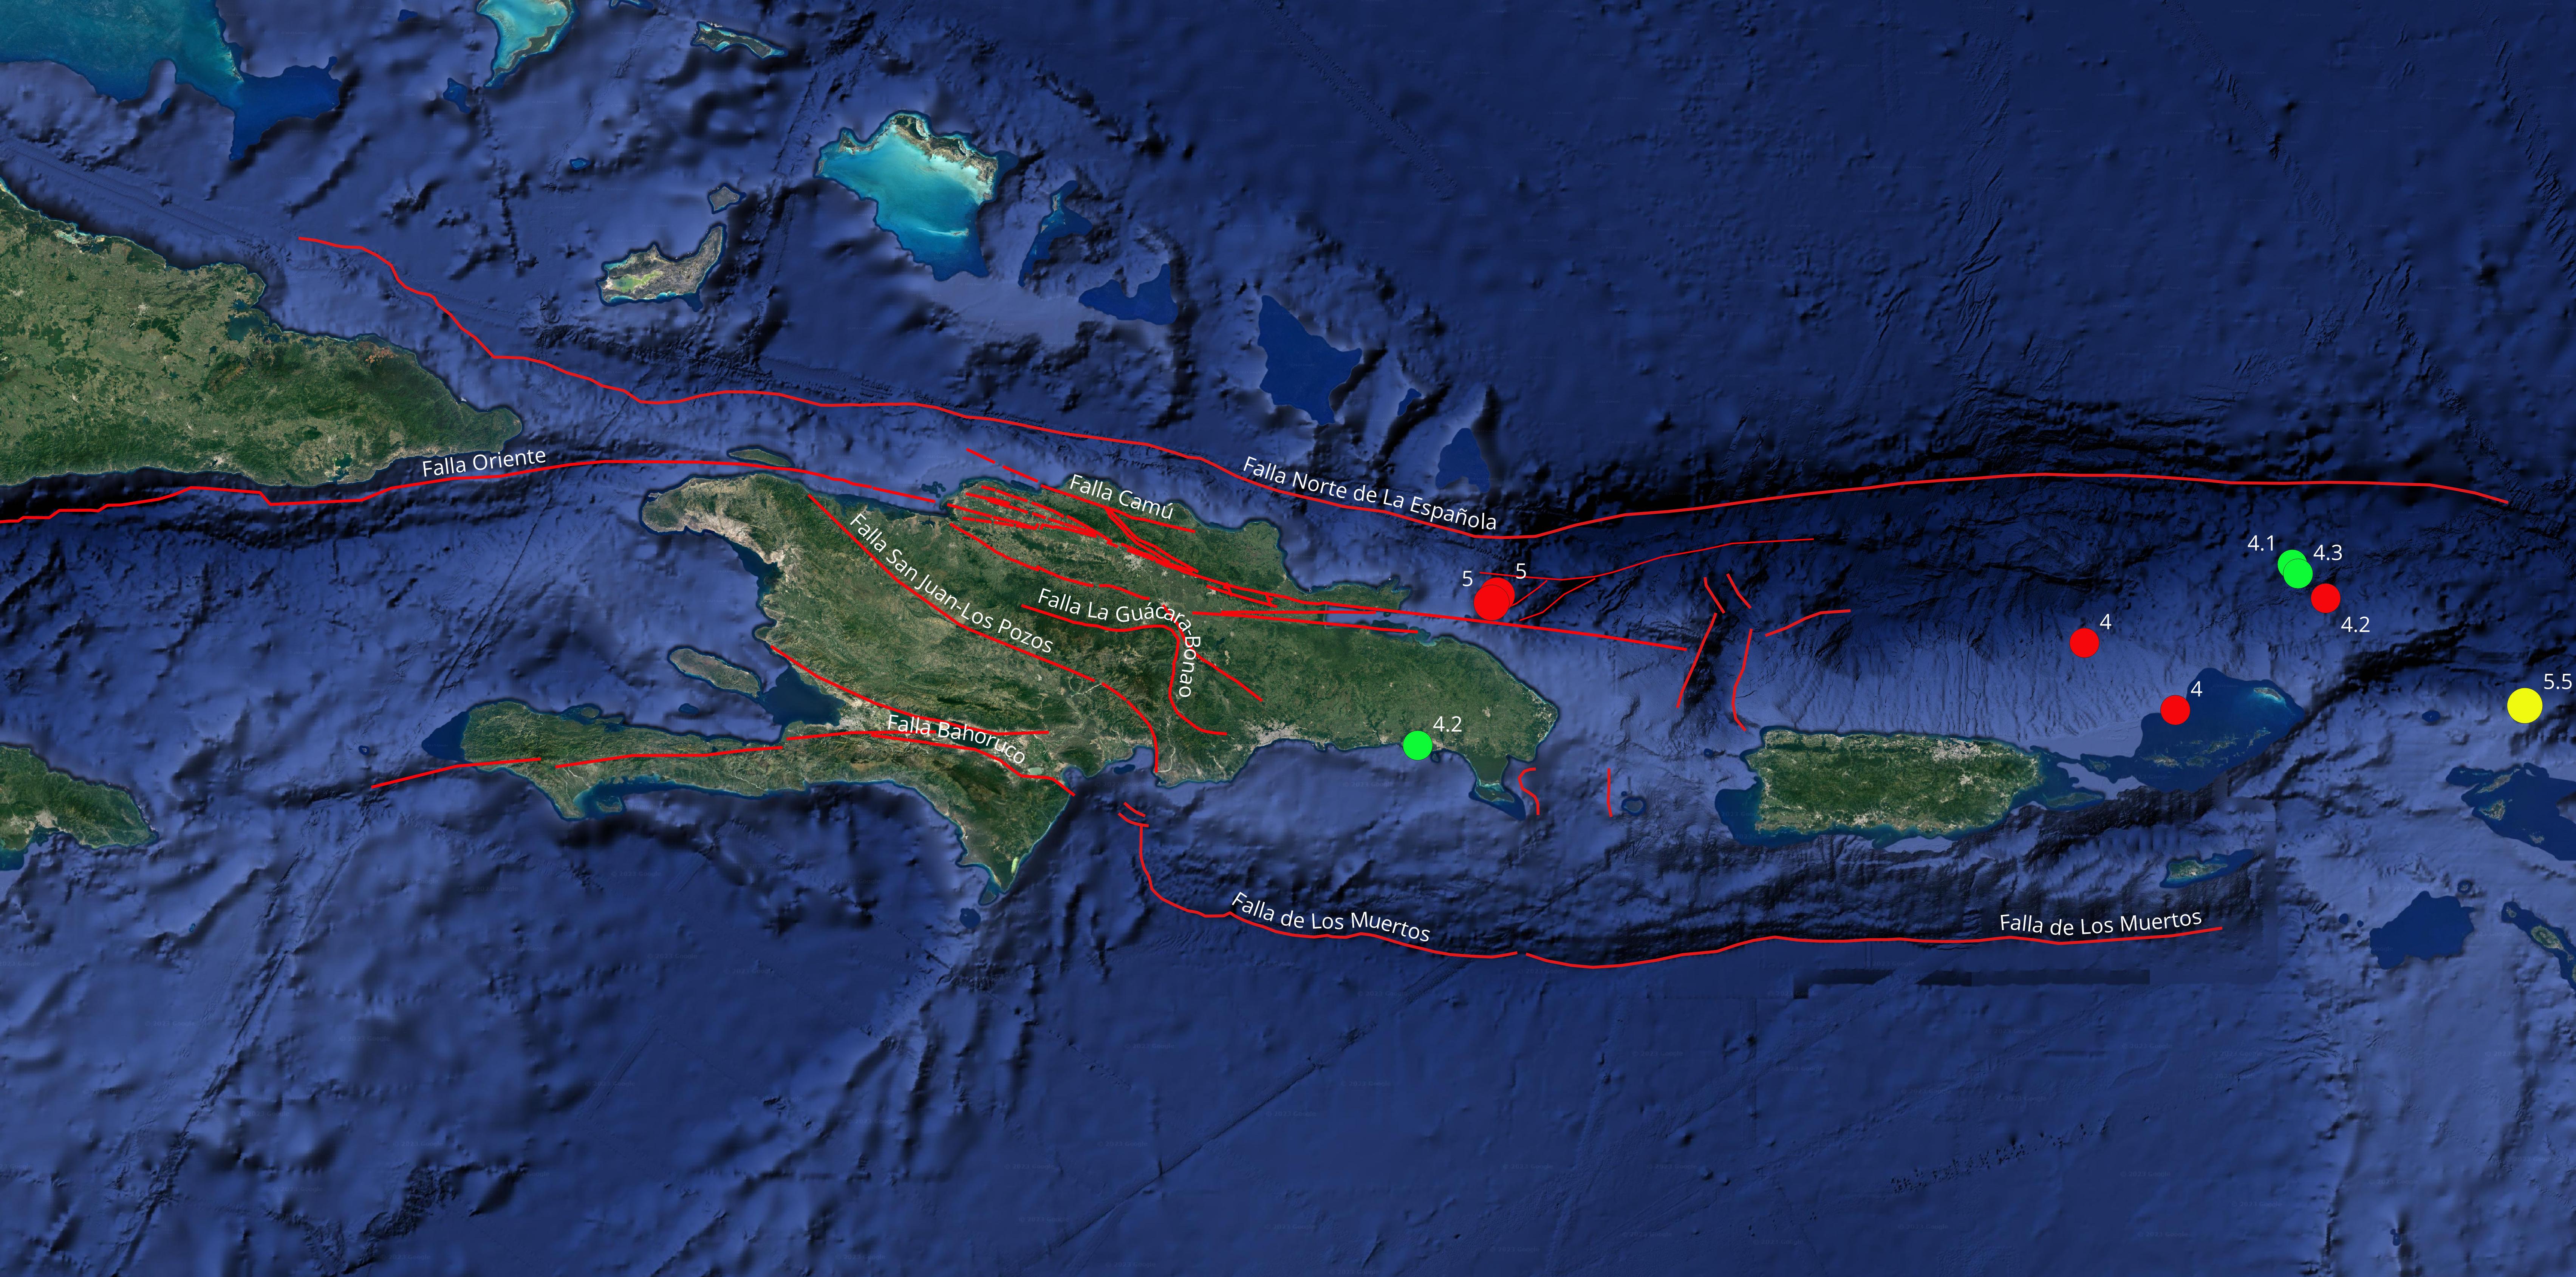 Imagen N°3, Mapa del noreste del Caribe mostrando los epicentros de los eventos sísmicos con registros de magnitudes por encima de 4.0